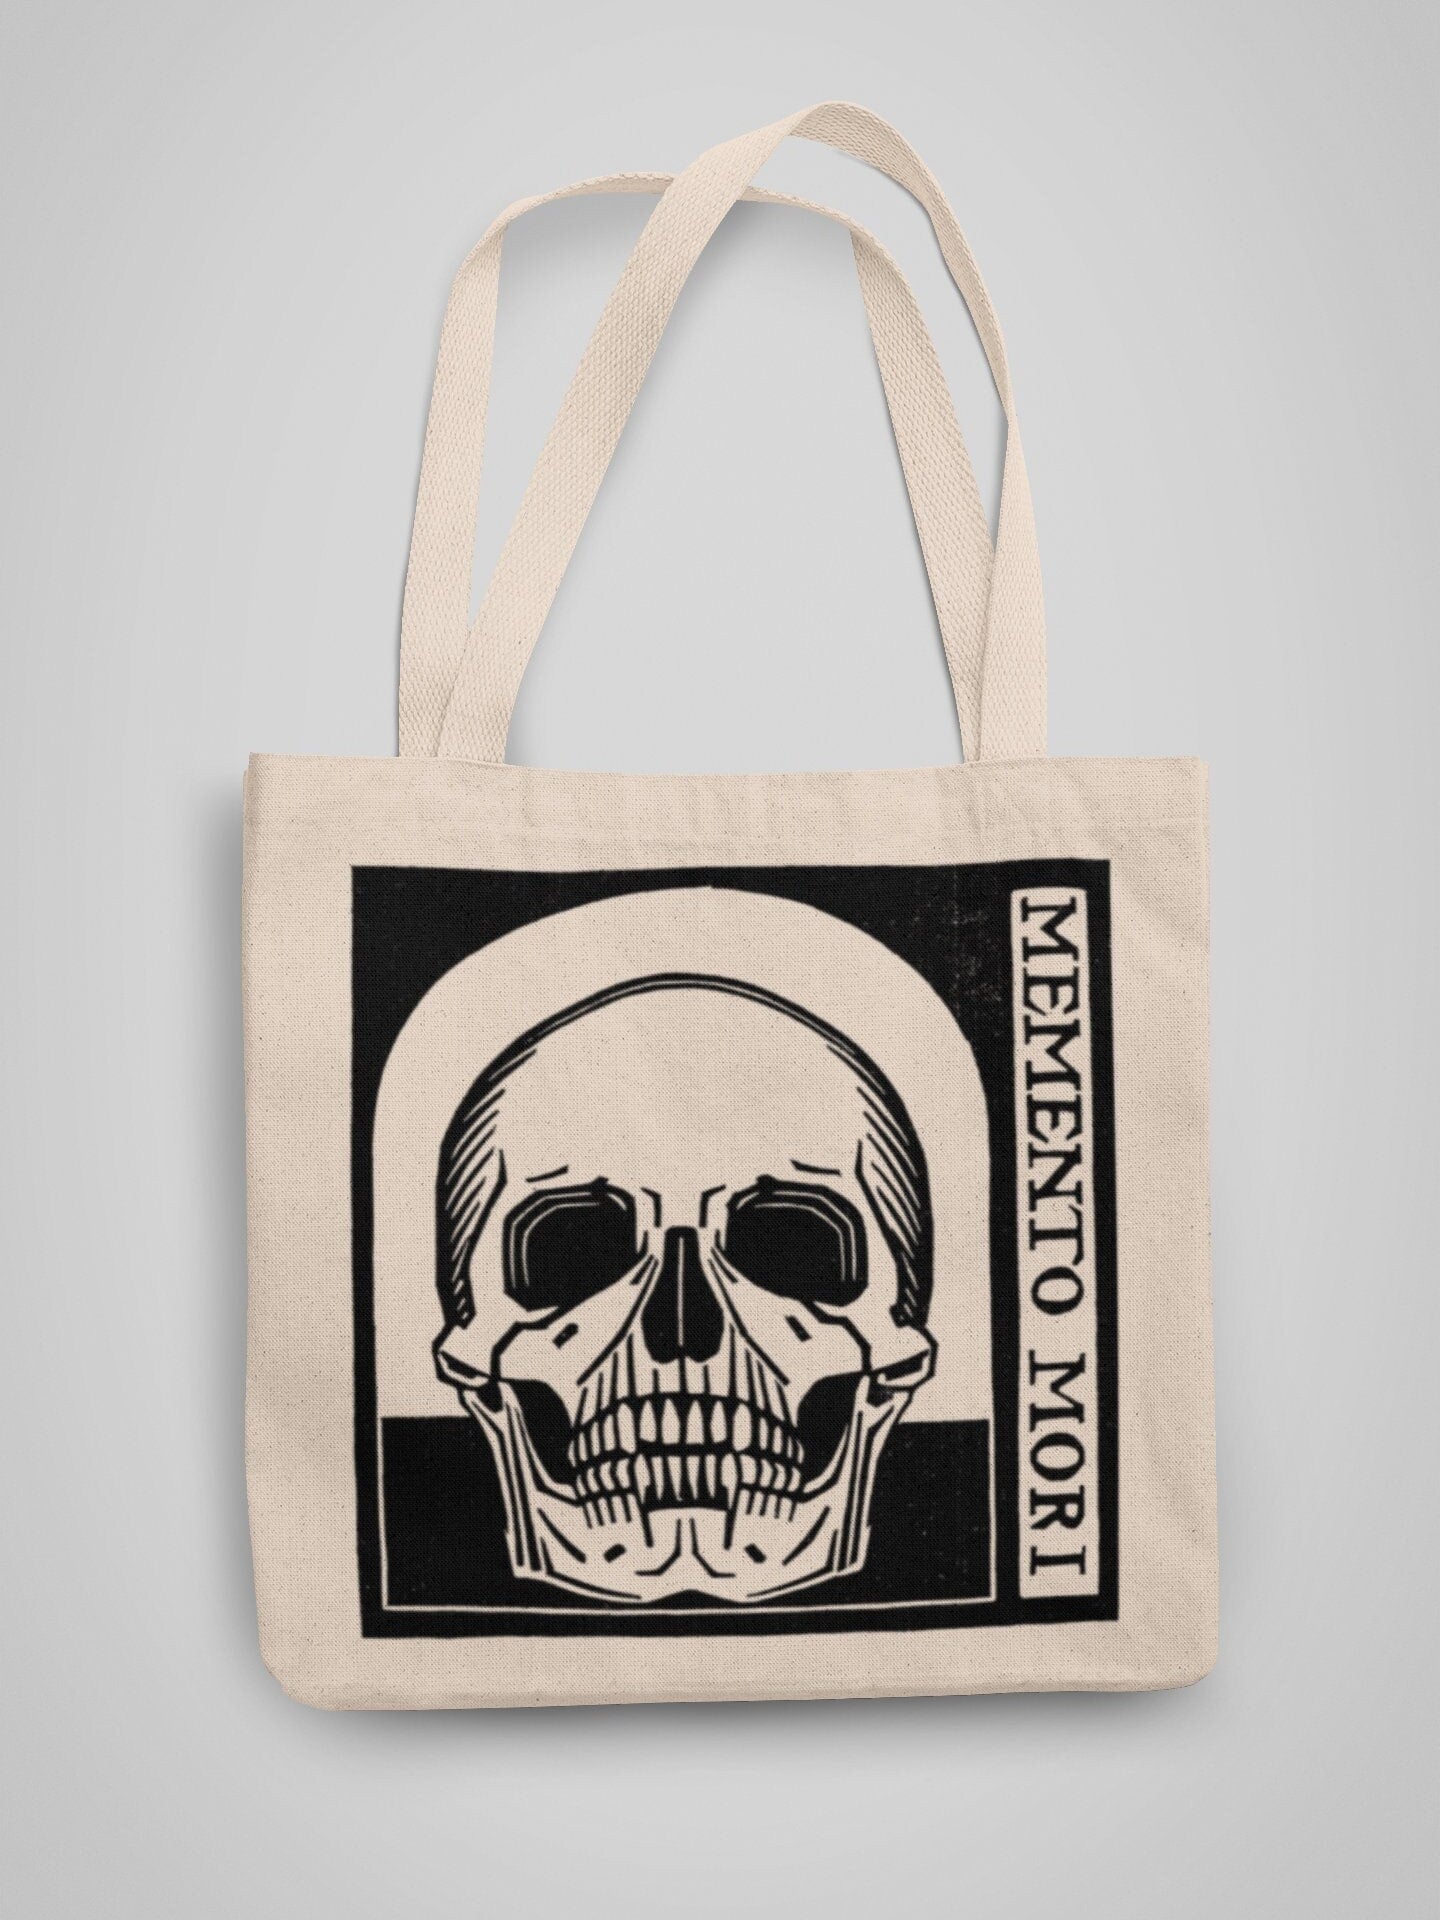 JULIE DE GRAAG - Memento Mori Skull Tote Bag - Pathos Studio - Tote Bags